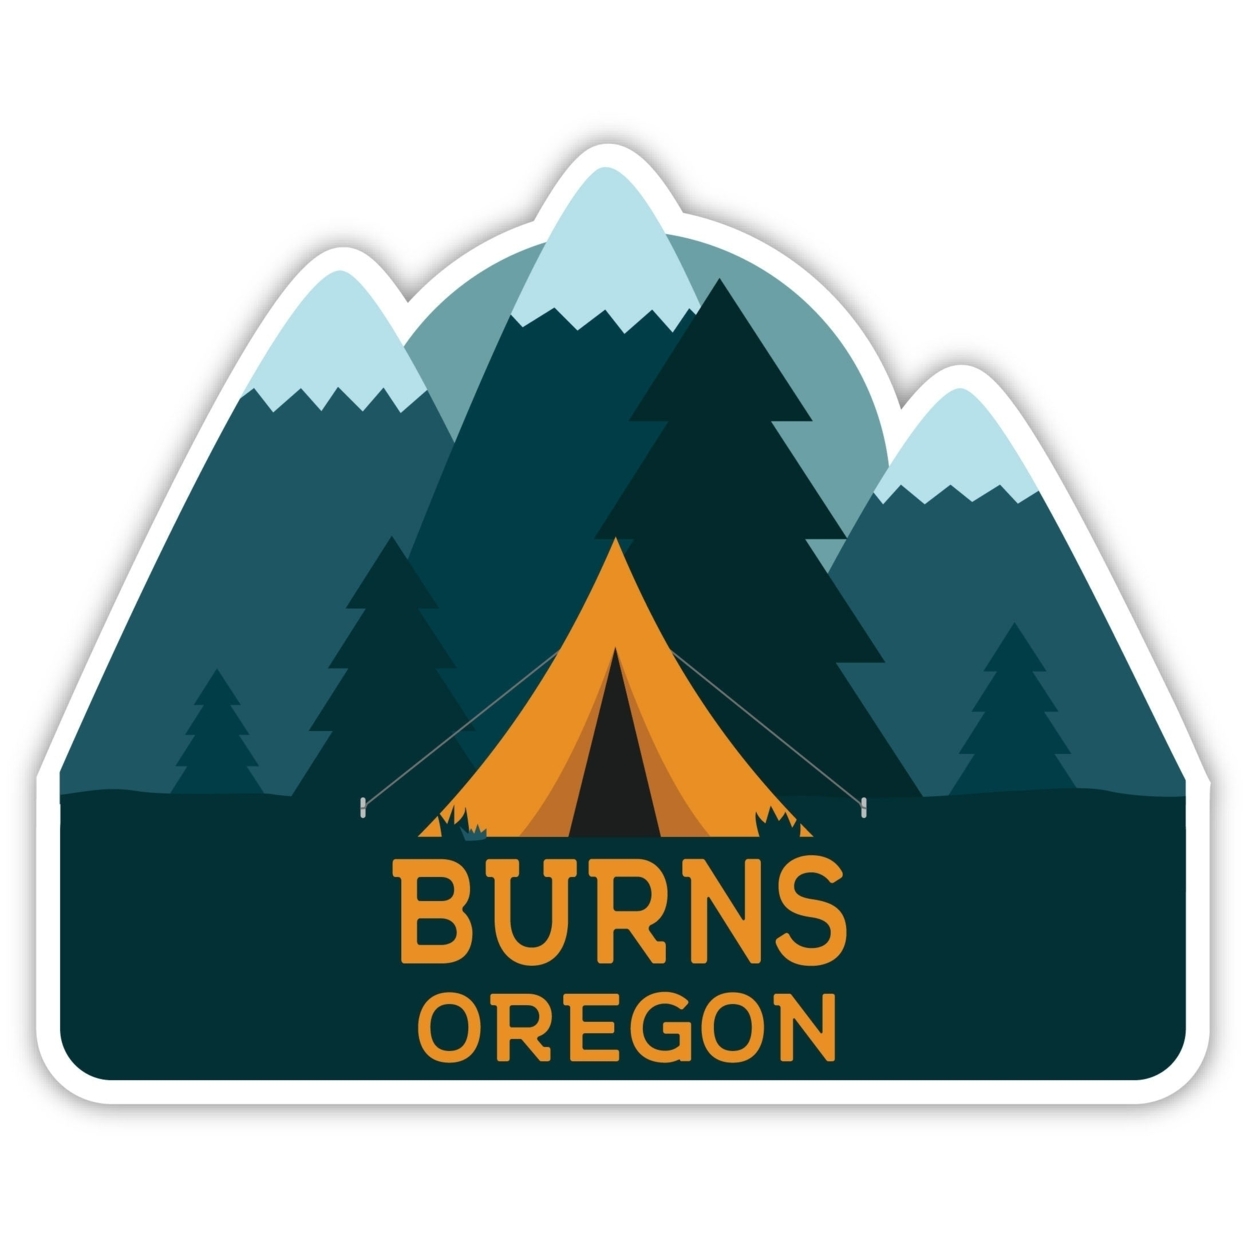 Burns Oregon Souvenir Decorative Stickers (Choose Theme And Size) - Single Unit, 8-Inch, Tent